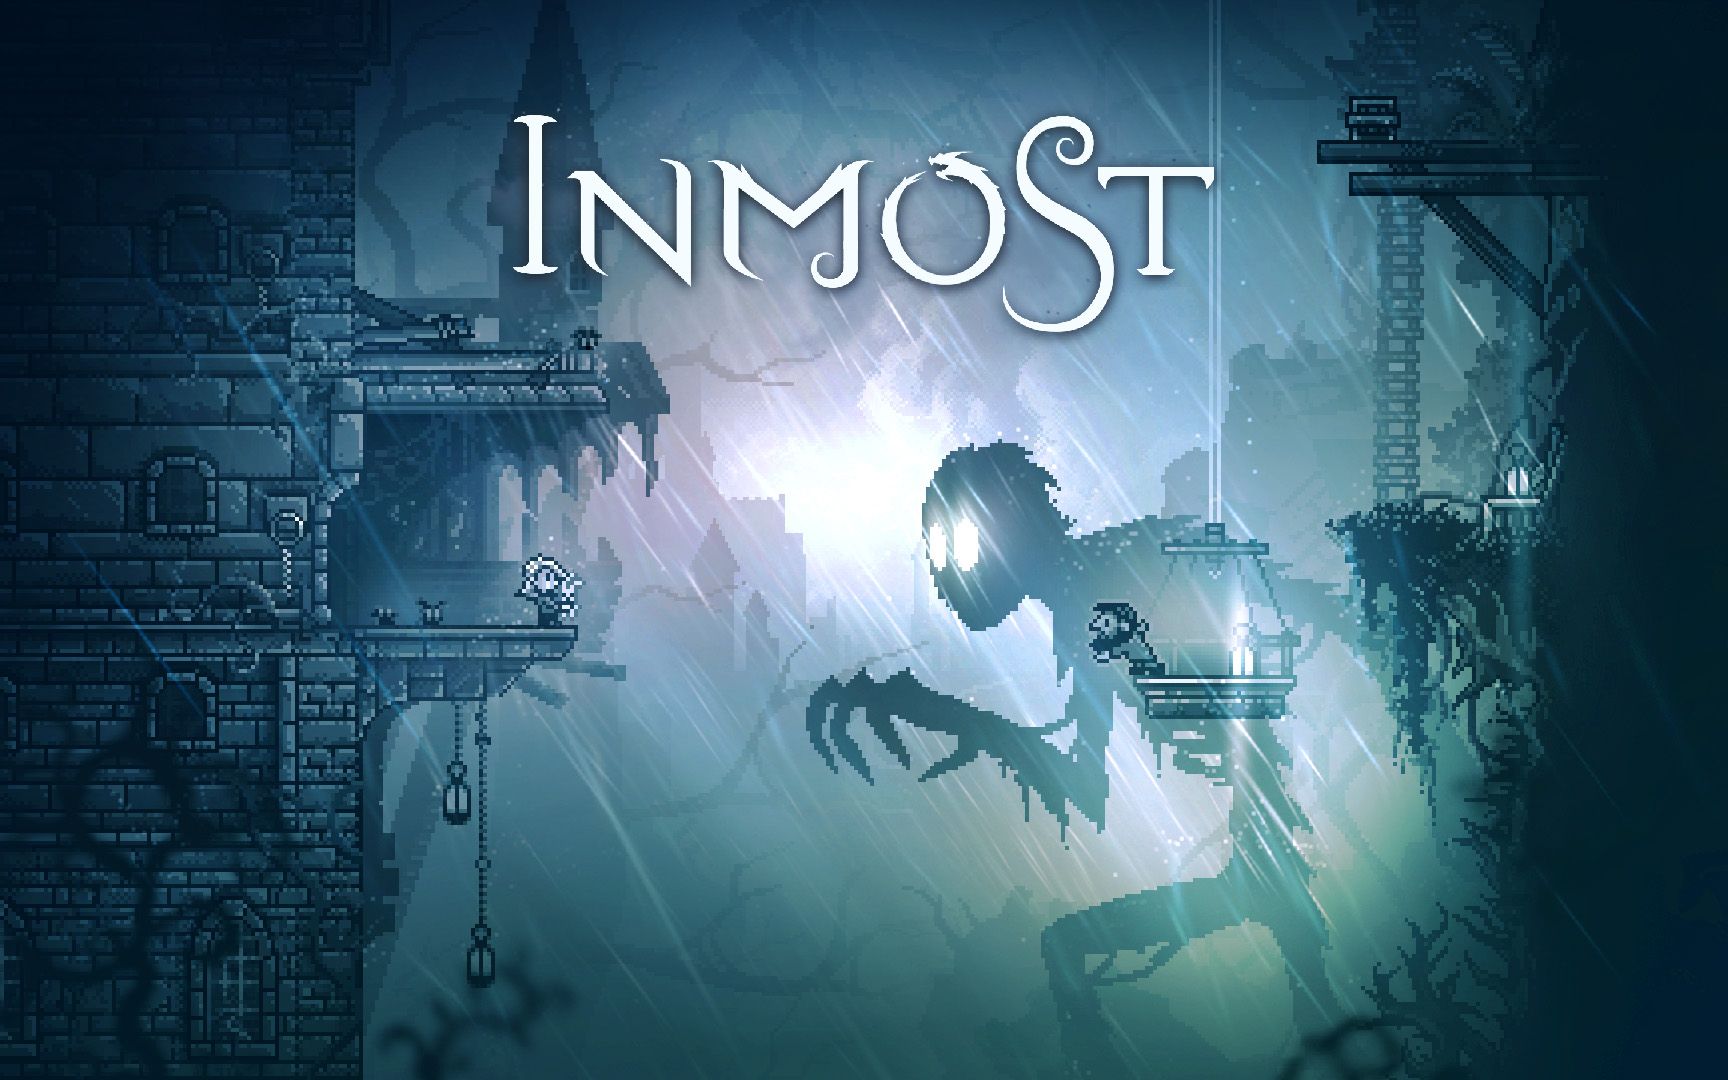 一款适合在暴风雨的夜晚一次性通关的极具电影质感的冒险解谜游戏《INMOST》